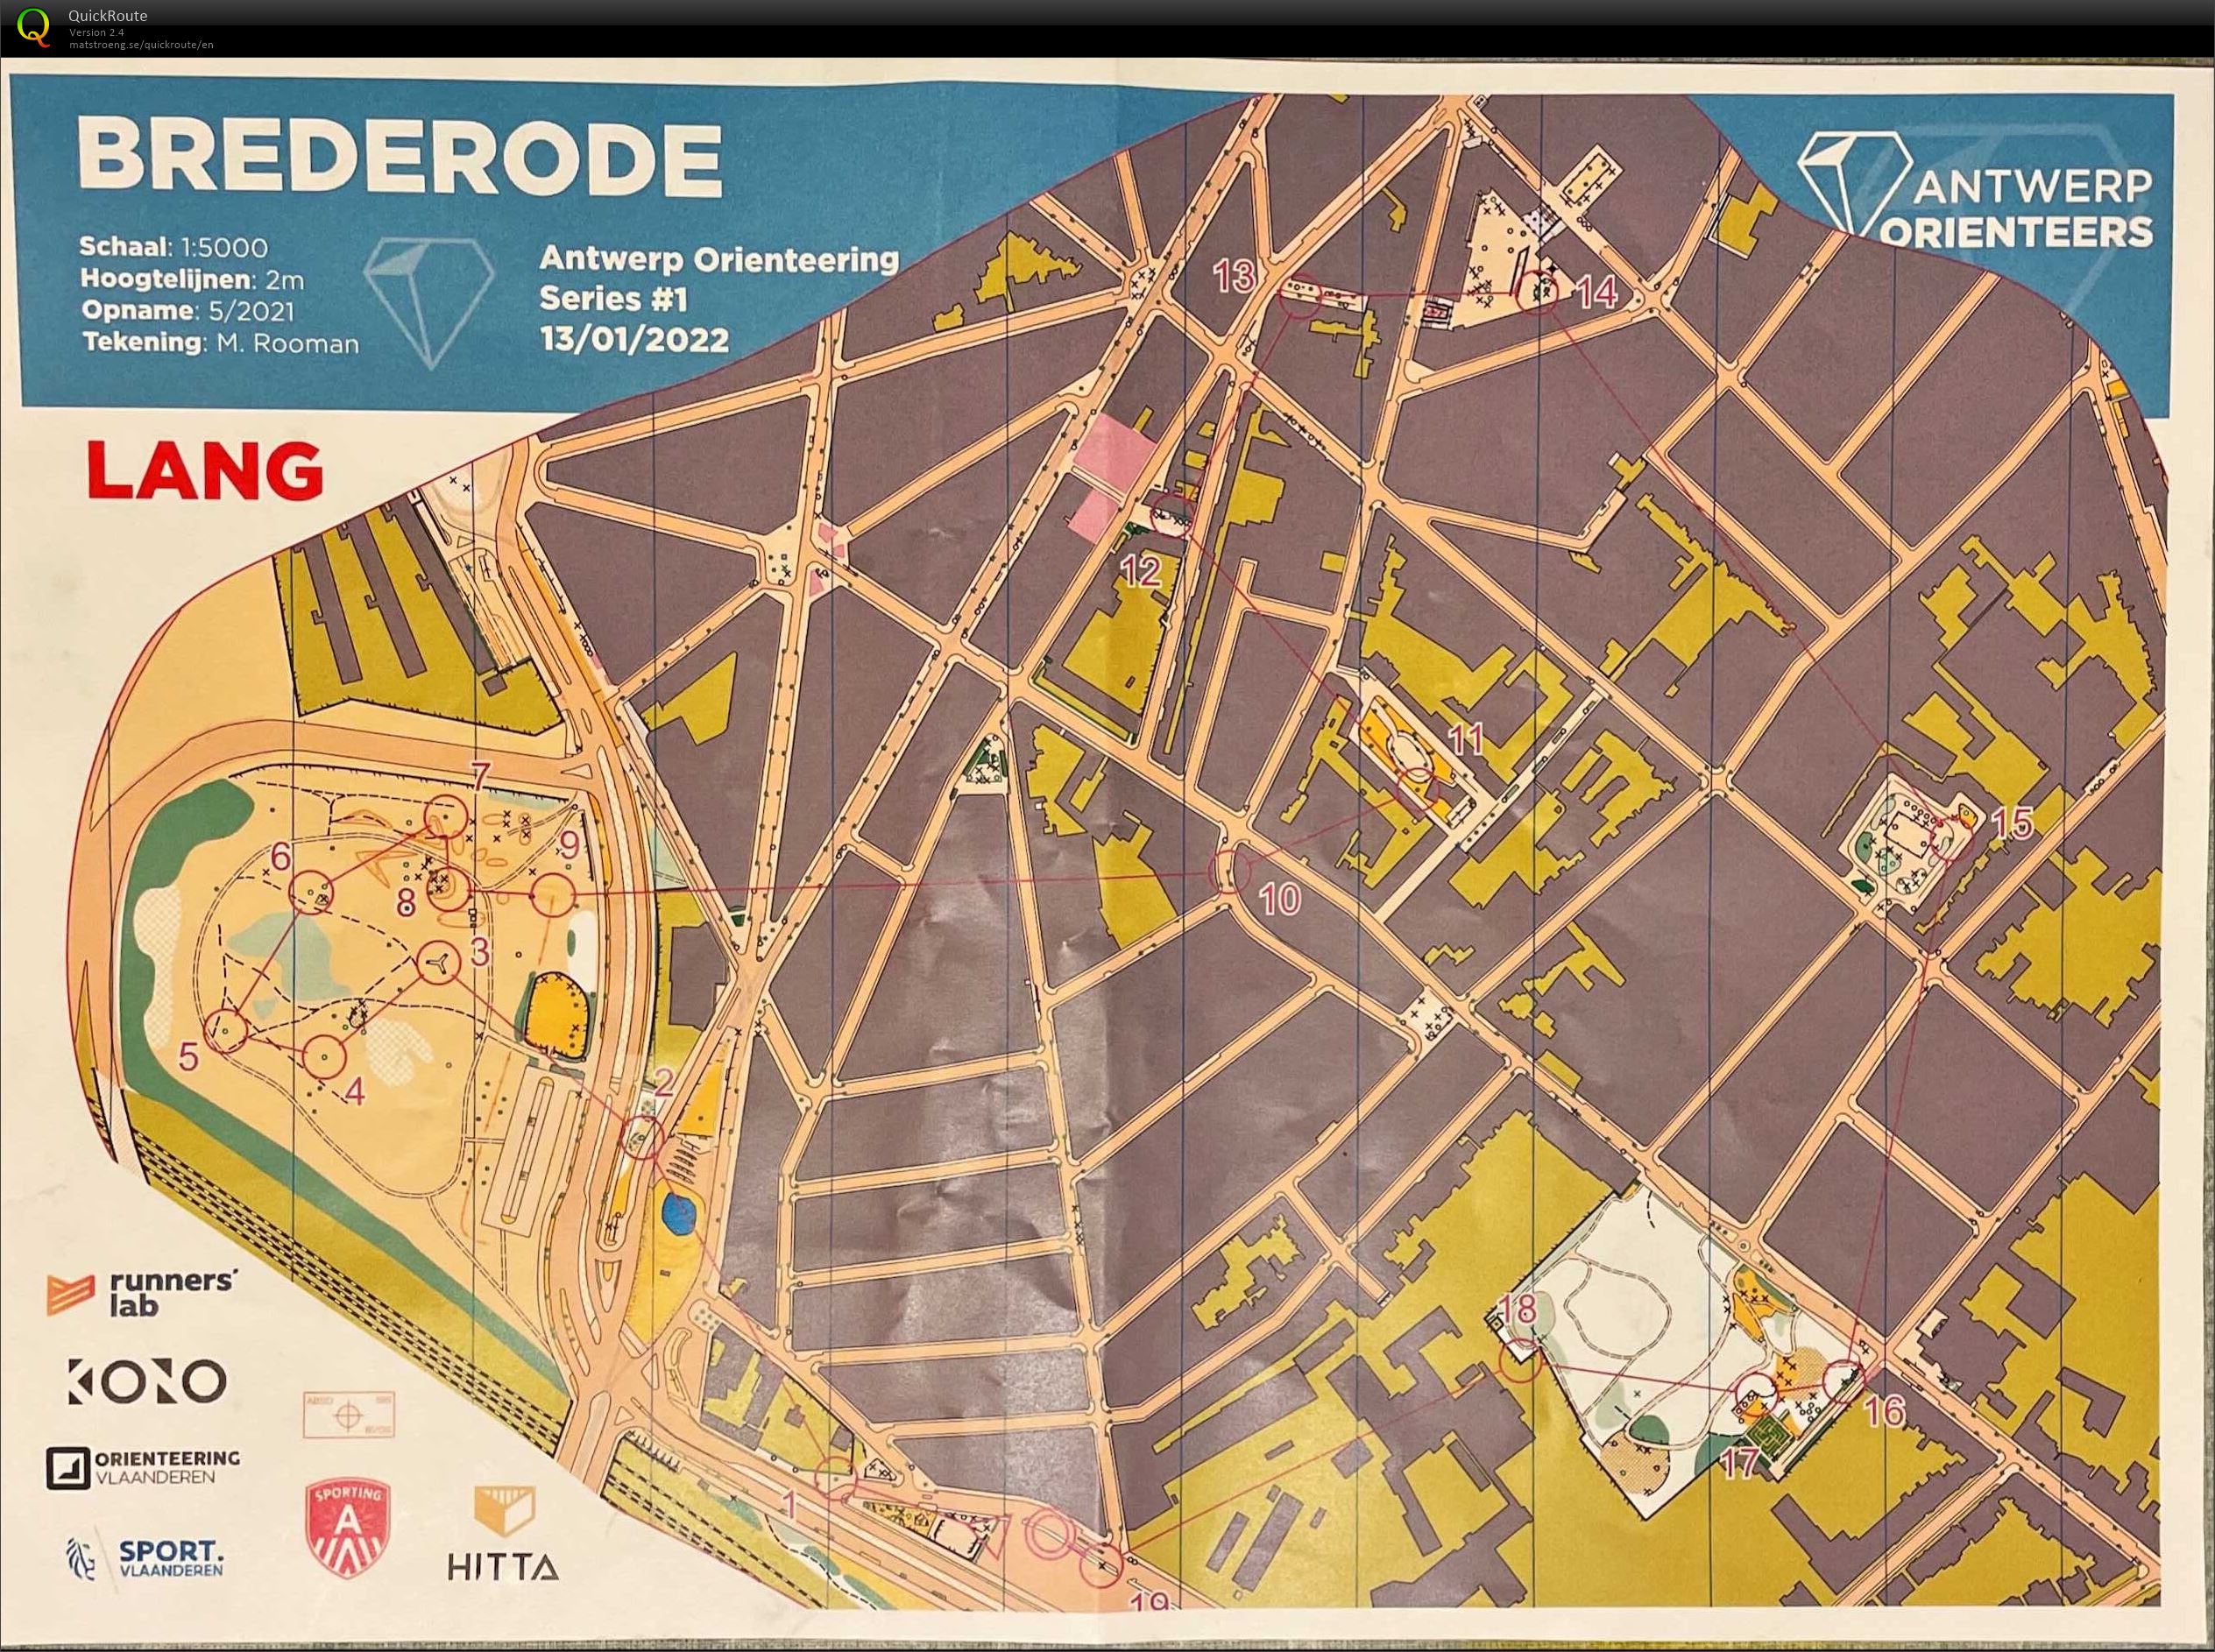 Antwerp Orienteering Series - Brederode - Lang (13.01.2022)